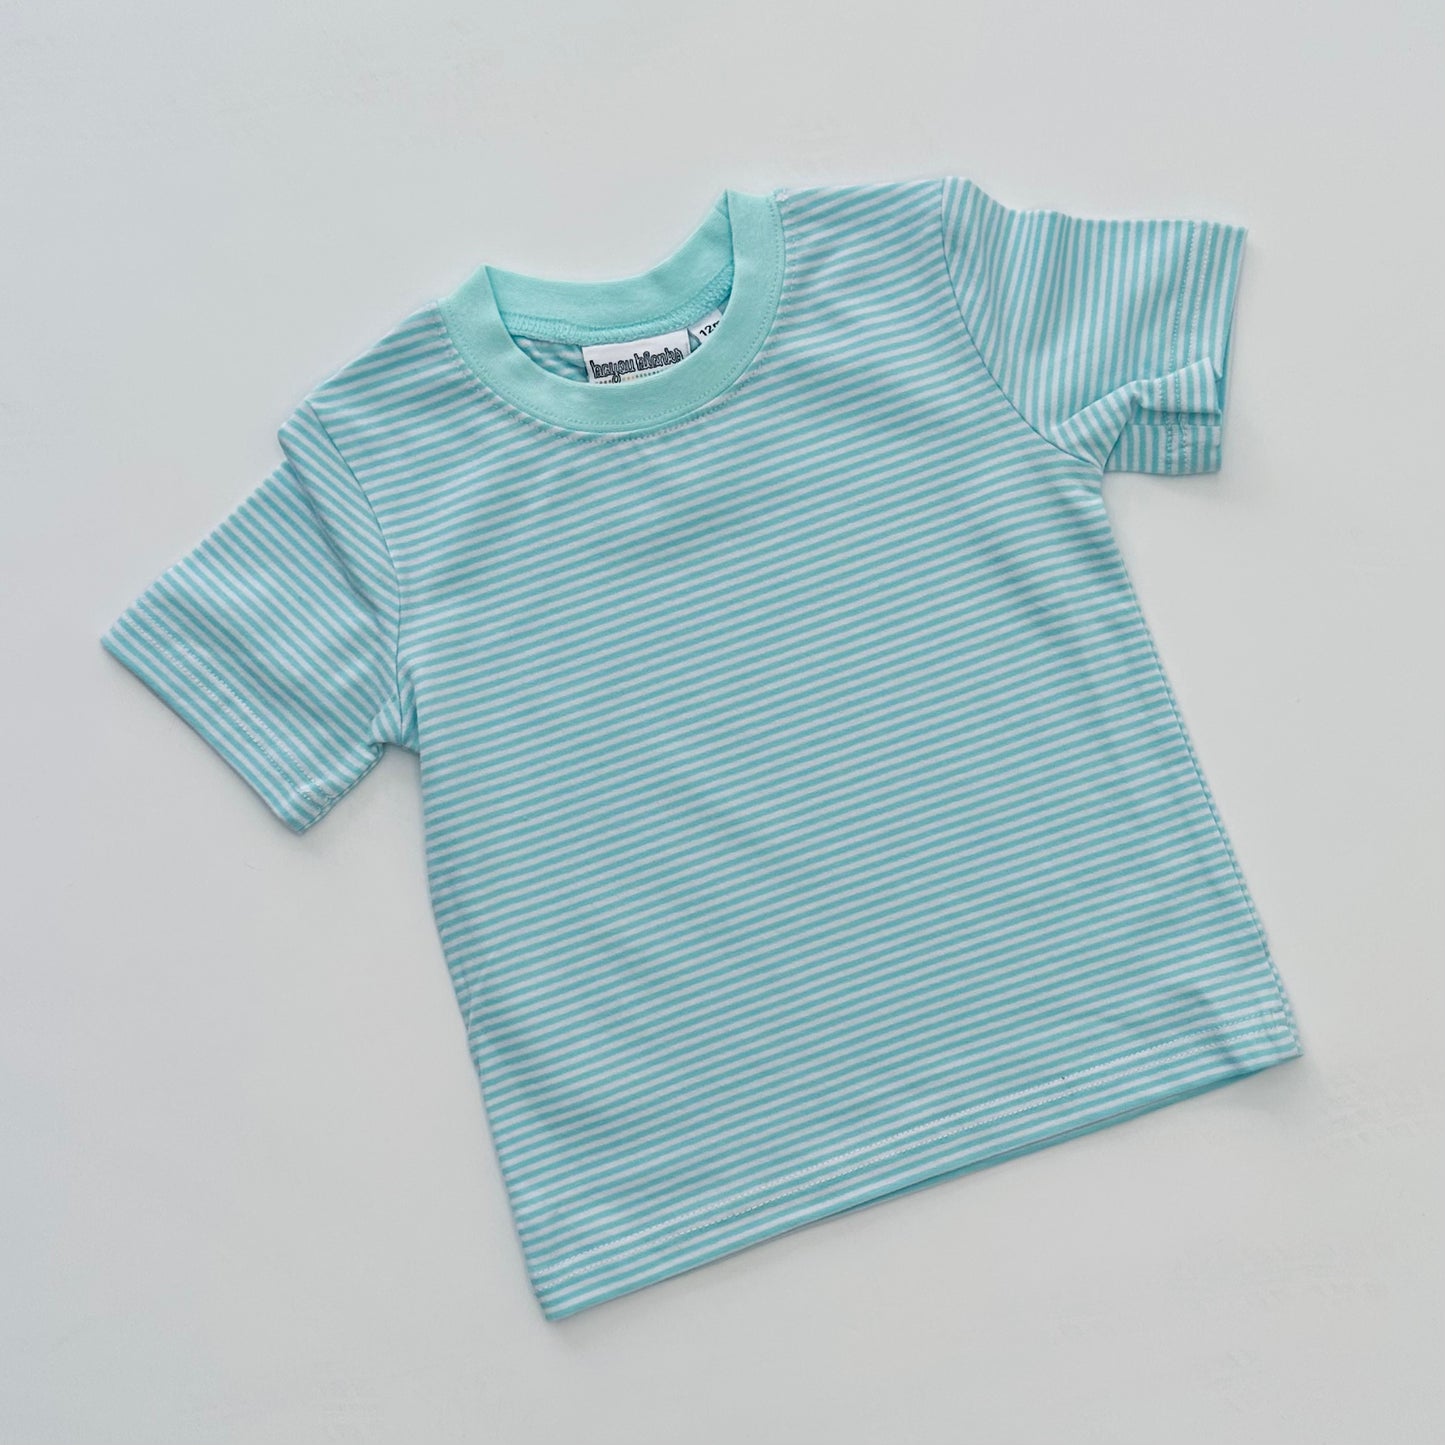 Knit Stripe Short Sleeve Shirt